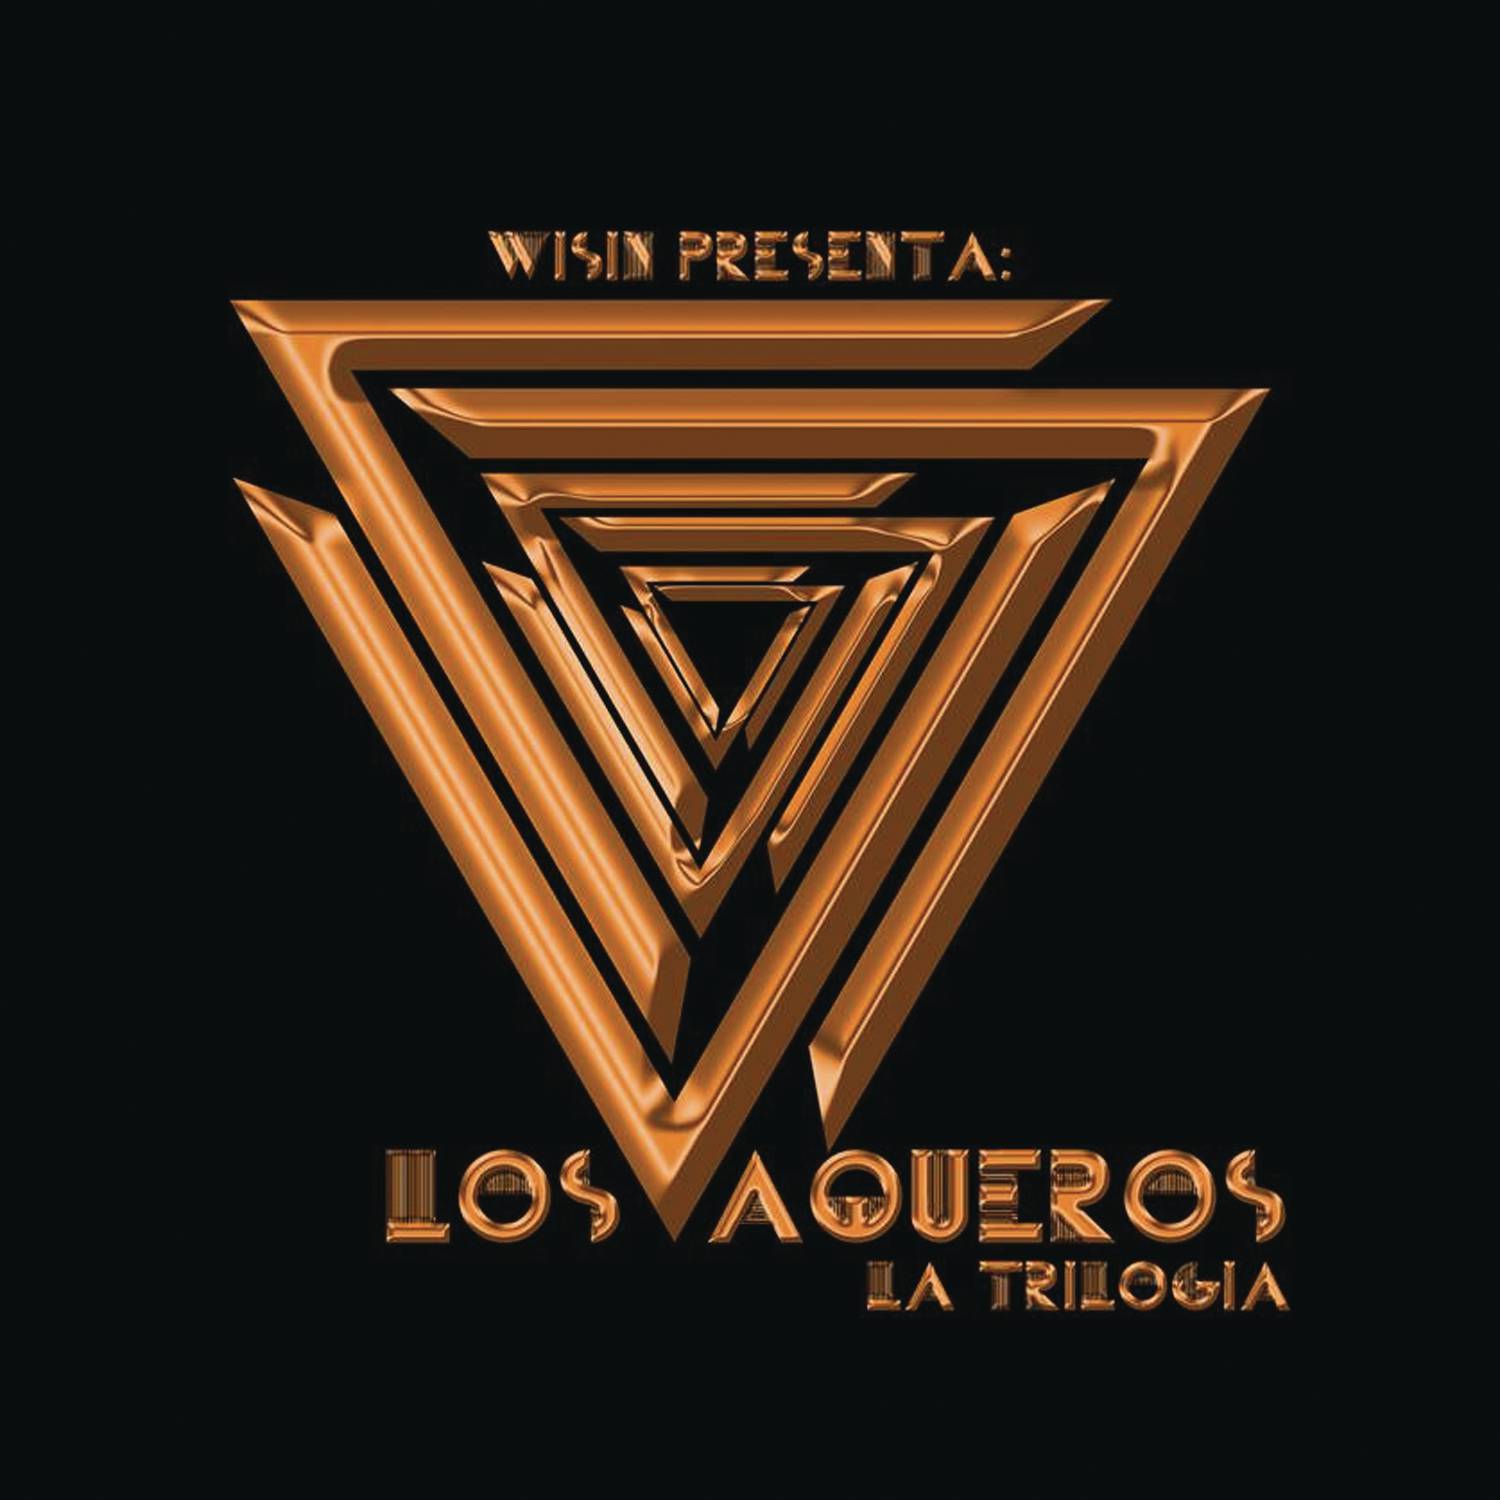 Los Vaqueros: La Trilogía专辑